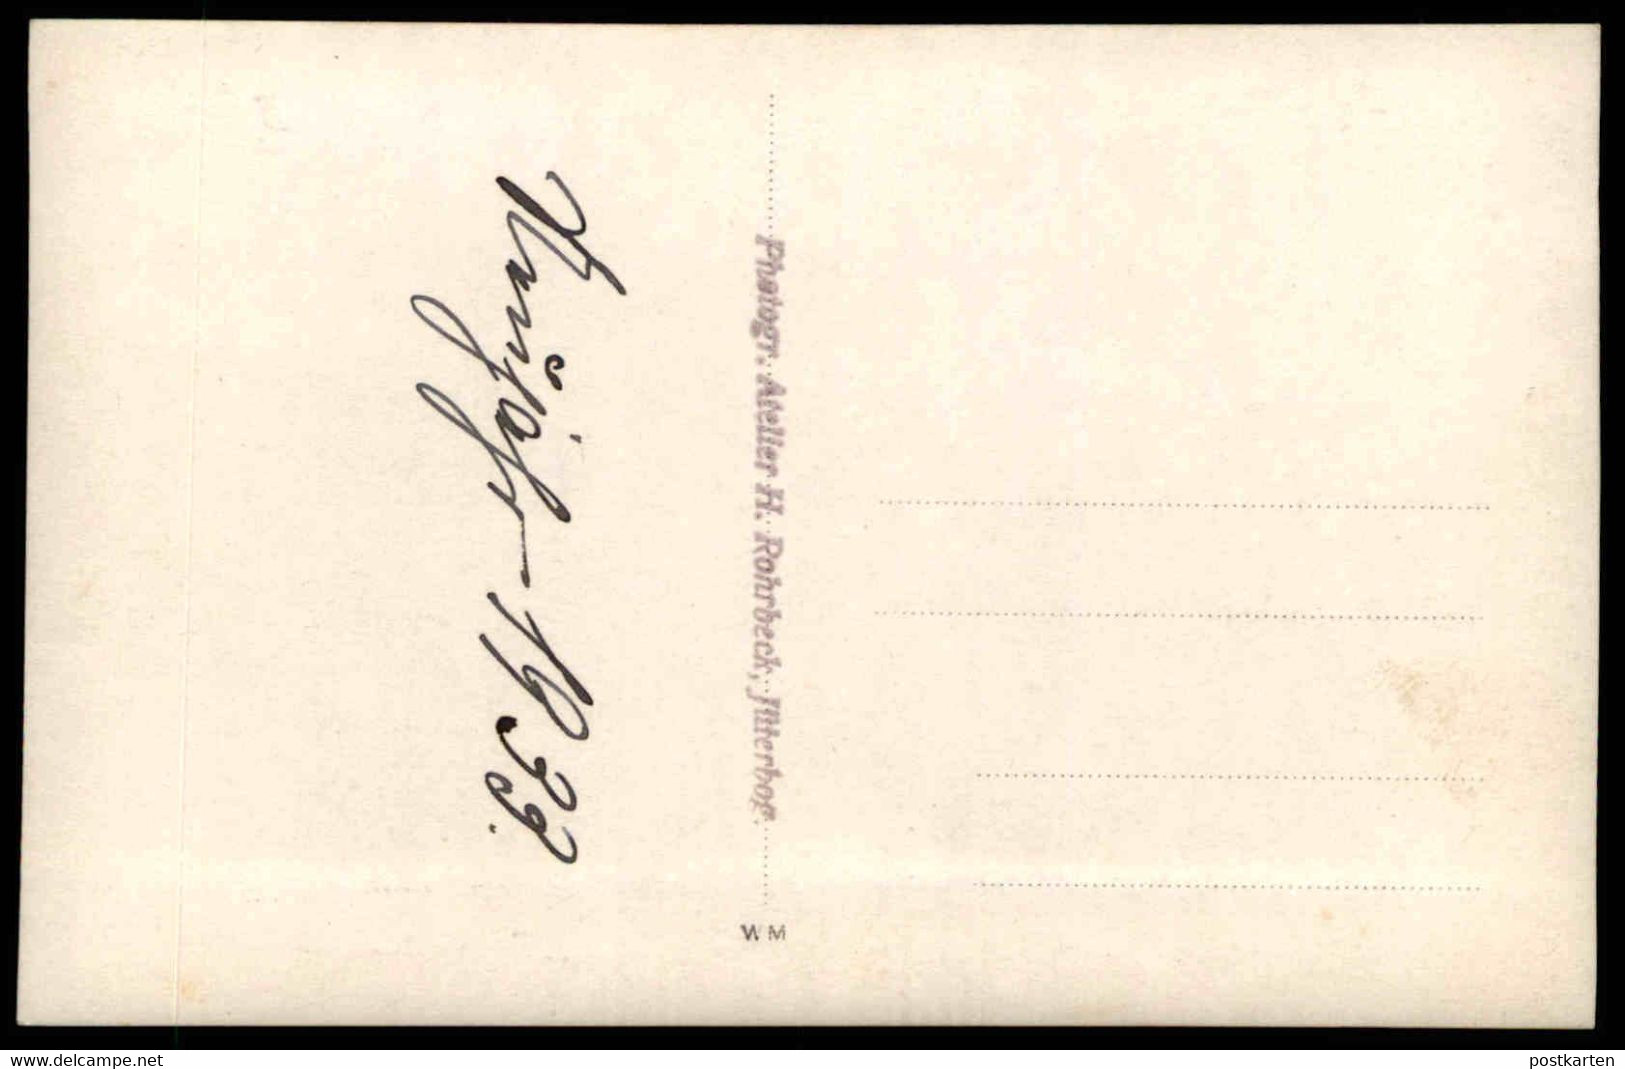 ALTE FOTO POSTKARTE SYLVESTER JÜTERBOG 31.12.1932 WOHNZIMMER NEUJAHR 1933 Familie Weihnachten Ansichtskarte Cpa Postcard - Jueterbog